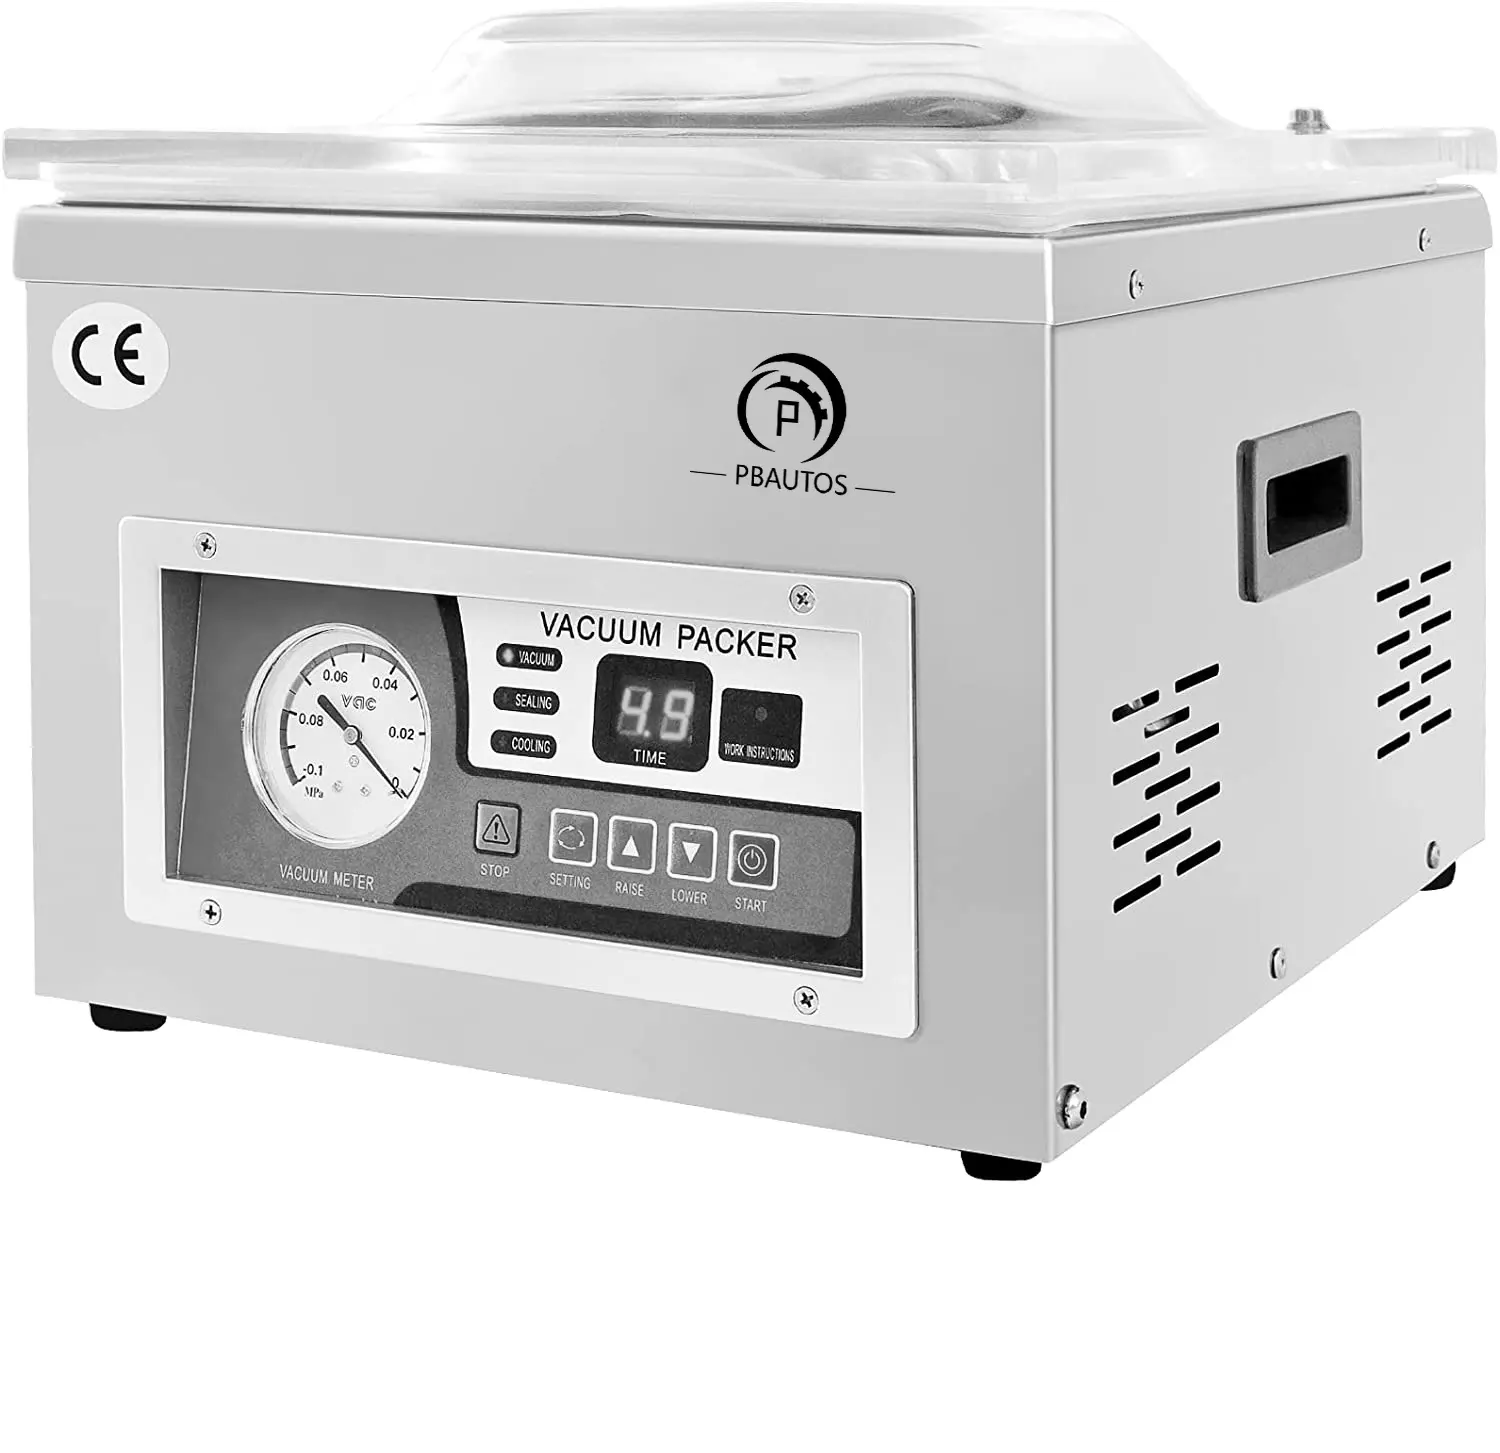 Machine à emballer sous vide automatique DZ 260A CE, machine à emballer sous vide commerciale à chambre unique pour aliments